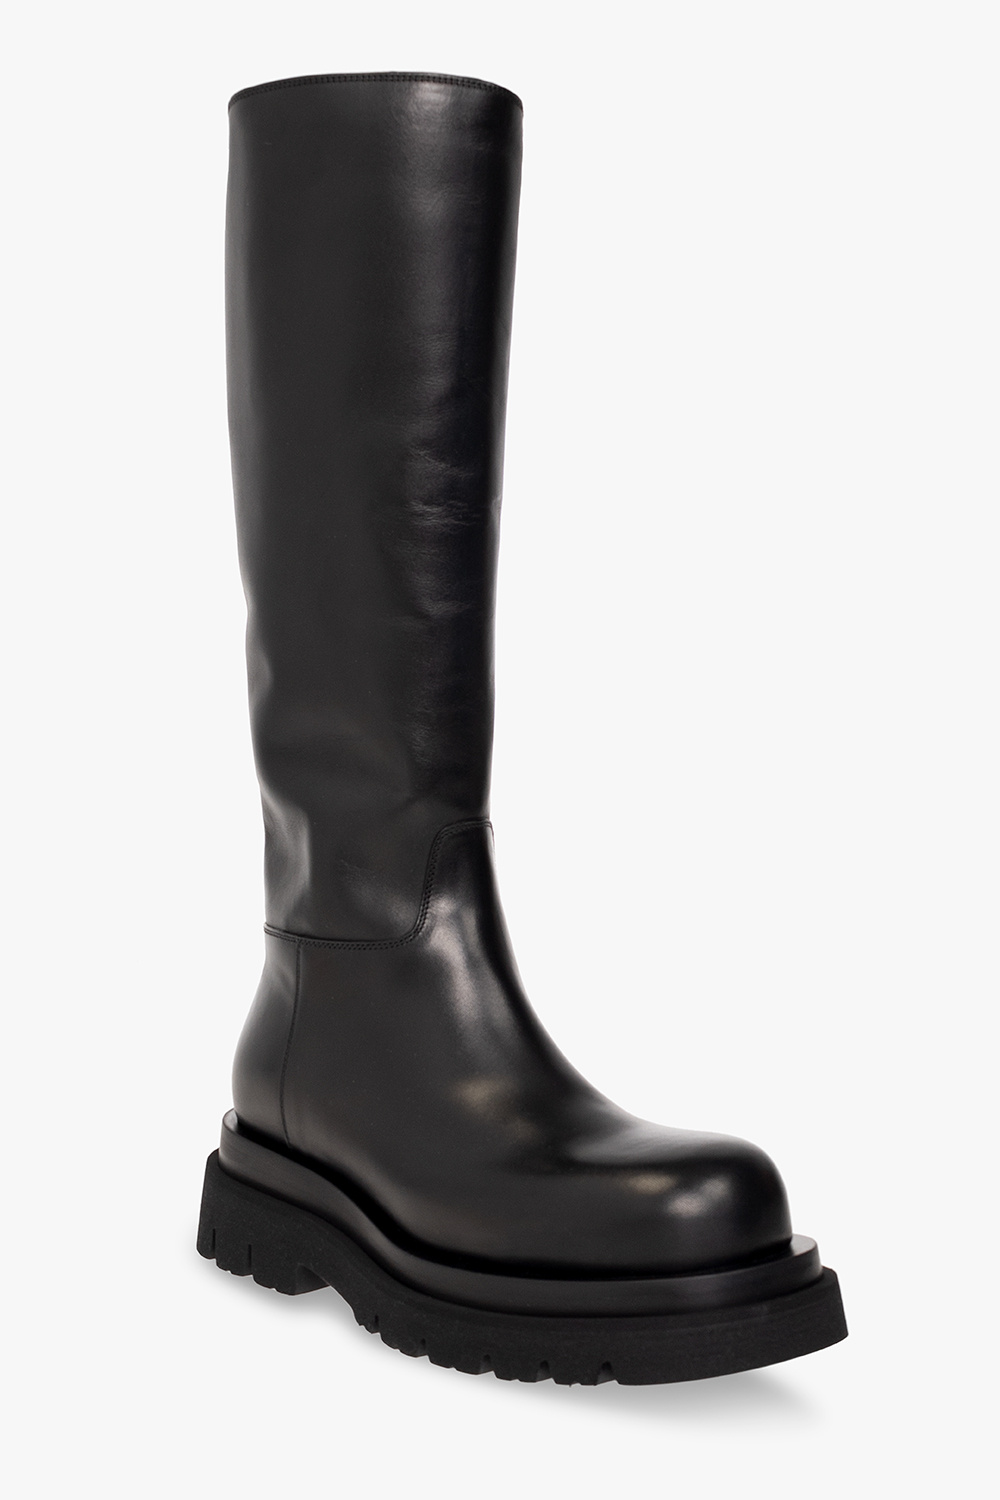 Bottega Veneta ‘Lug’ boots